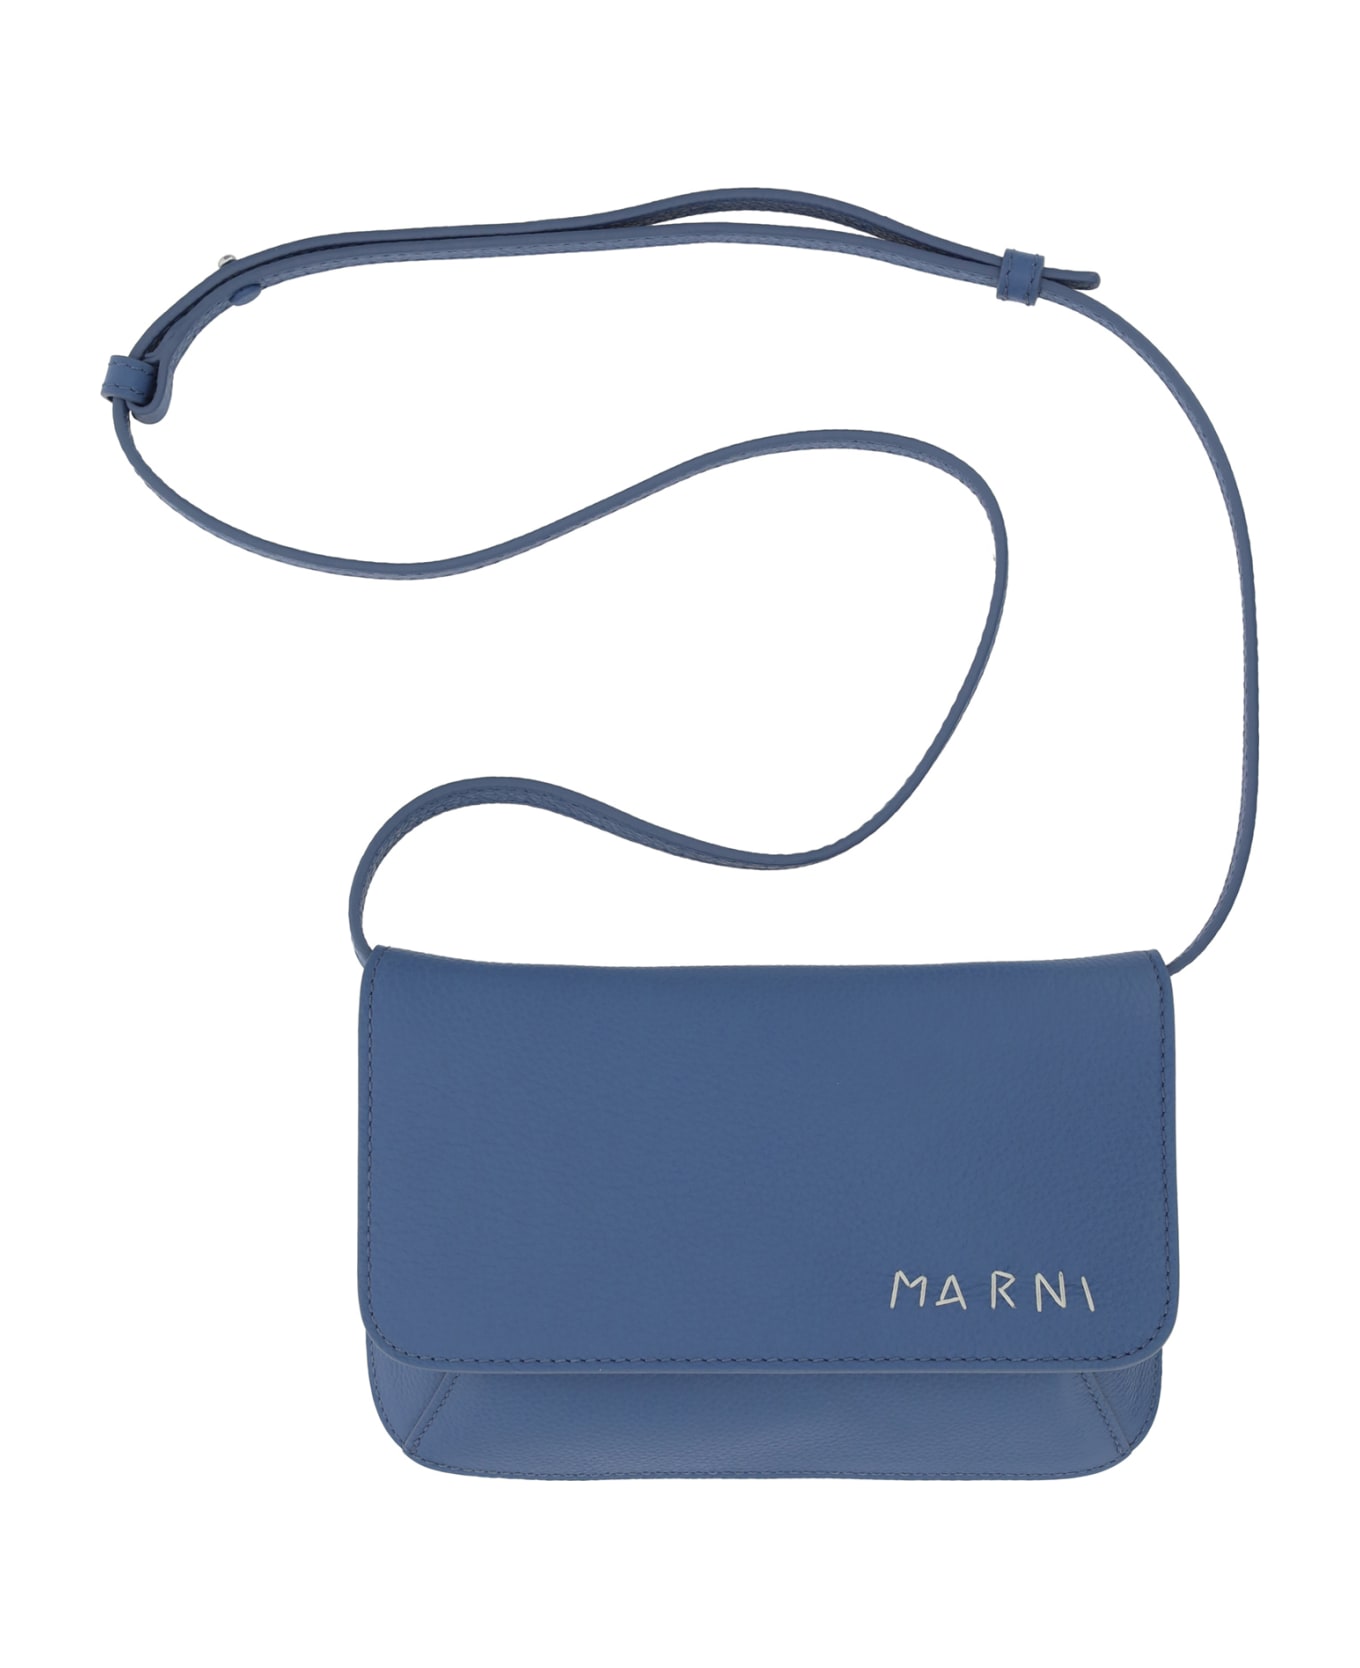 Marni Flap Trunk Shoulder Bag - Gnawed Blue